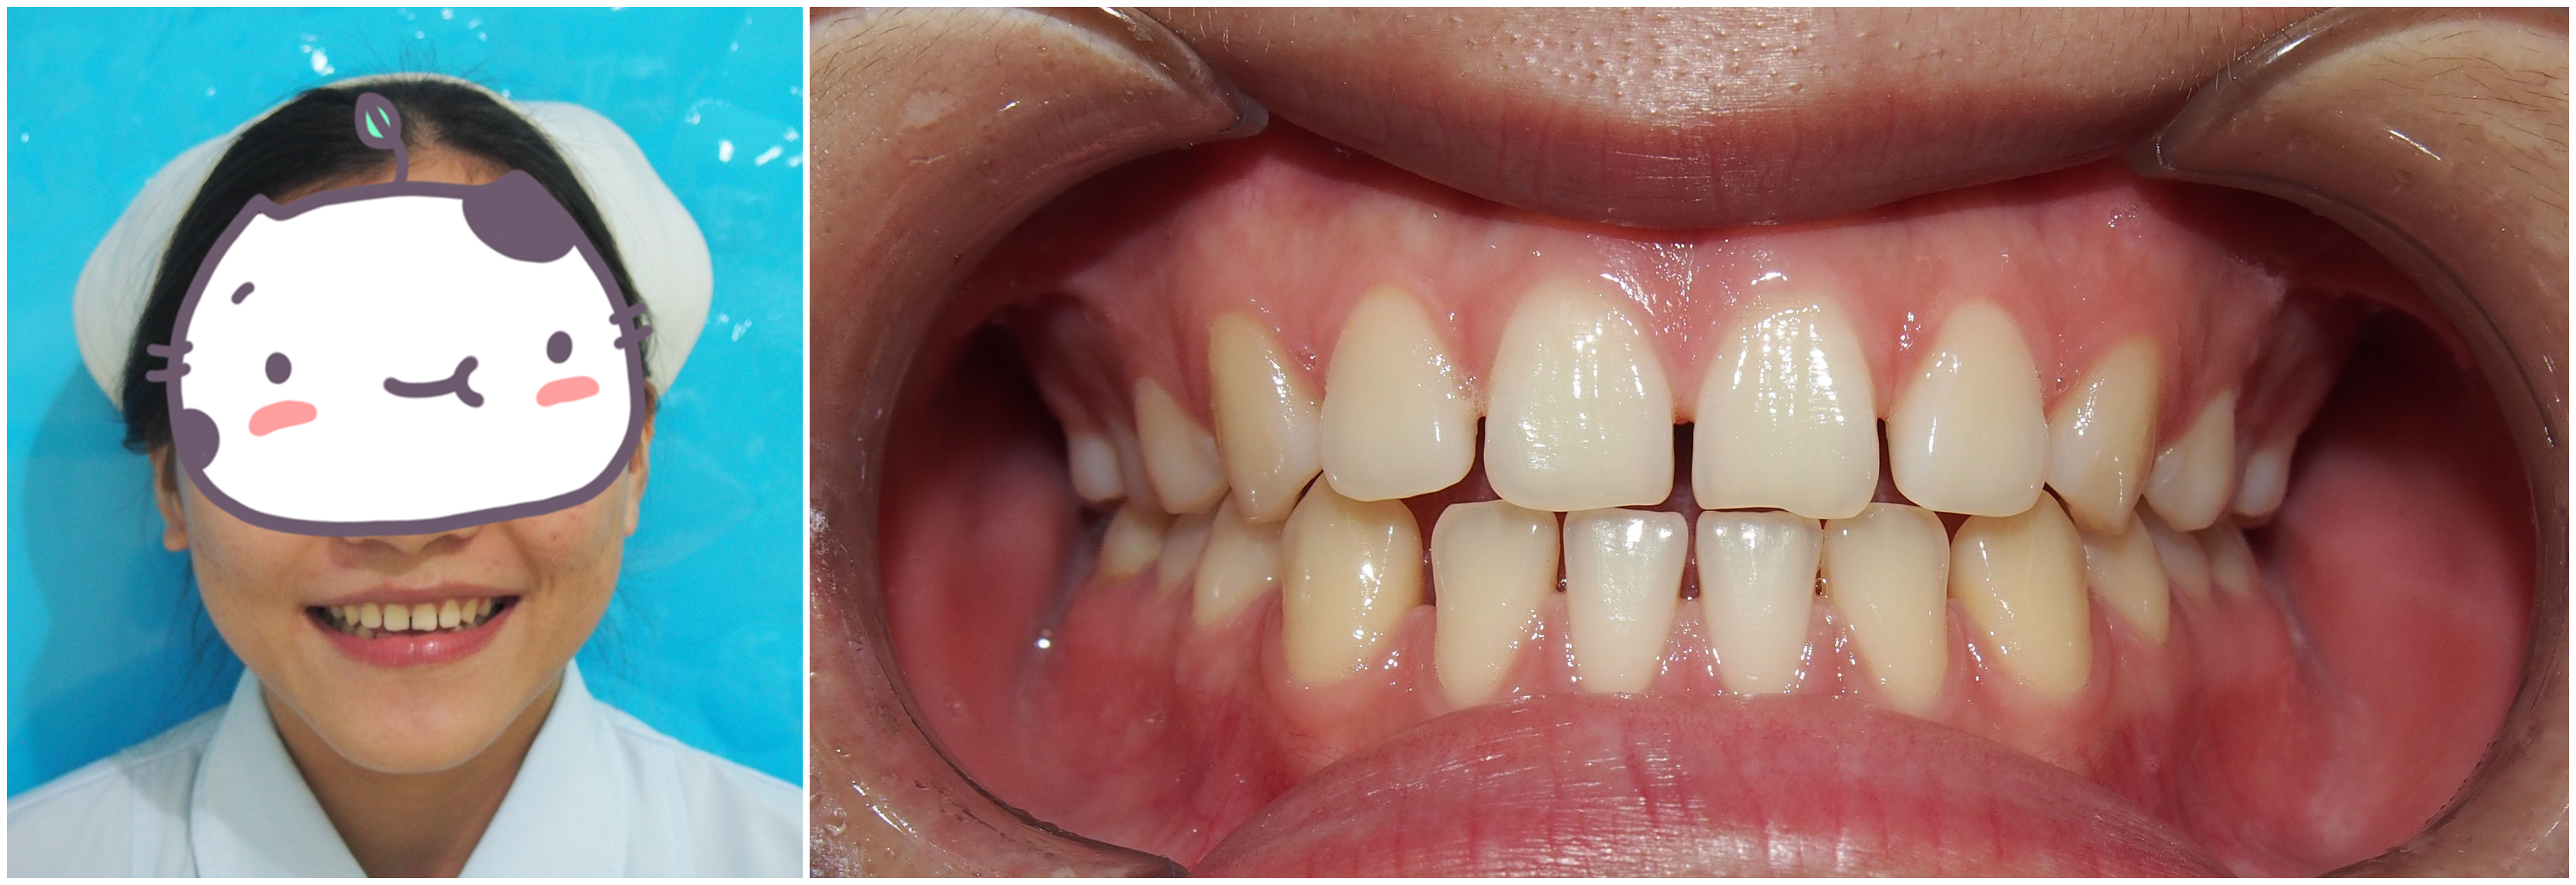 矫治之前牙齿情况▼牙列稀疏